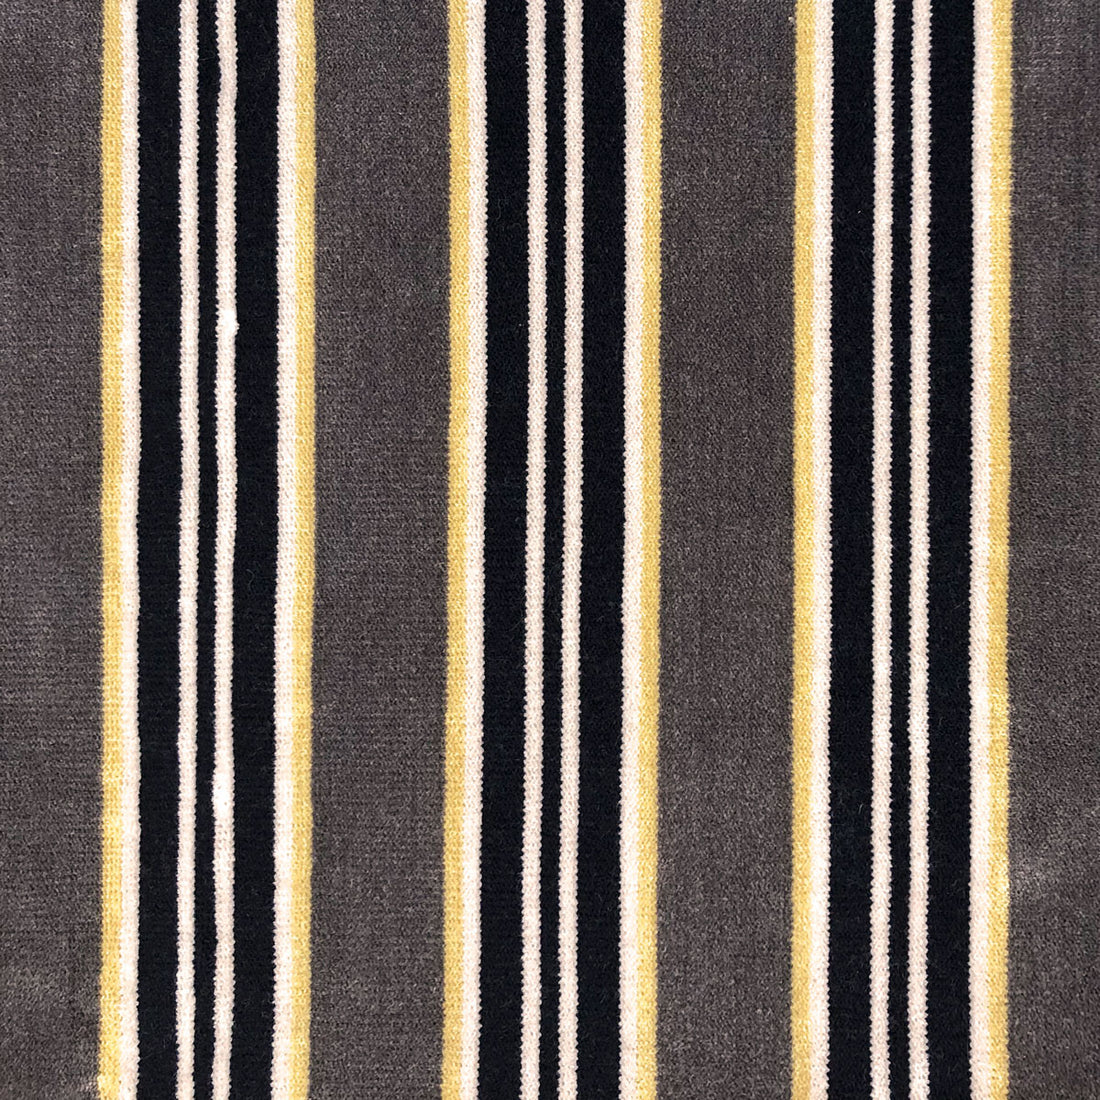 Tucha fabric in topo/oro color - pattern LCT1051.006.0 - by Gaston y Daniela in the Lorenzo Castillo VI collection